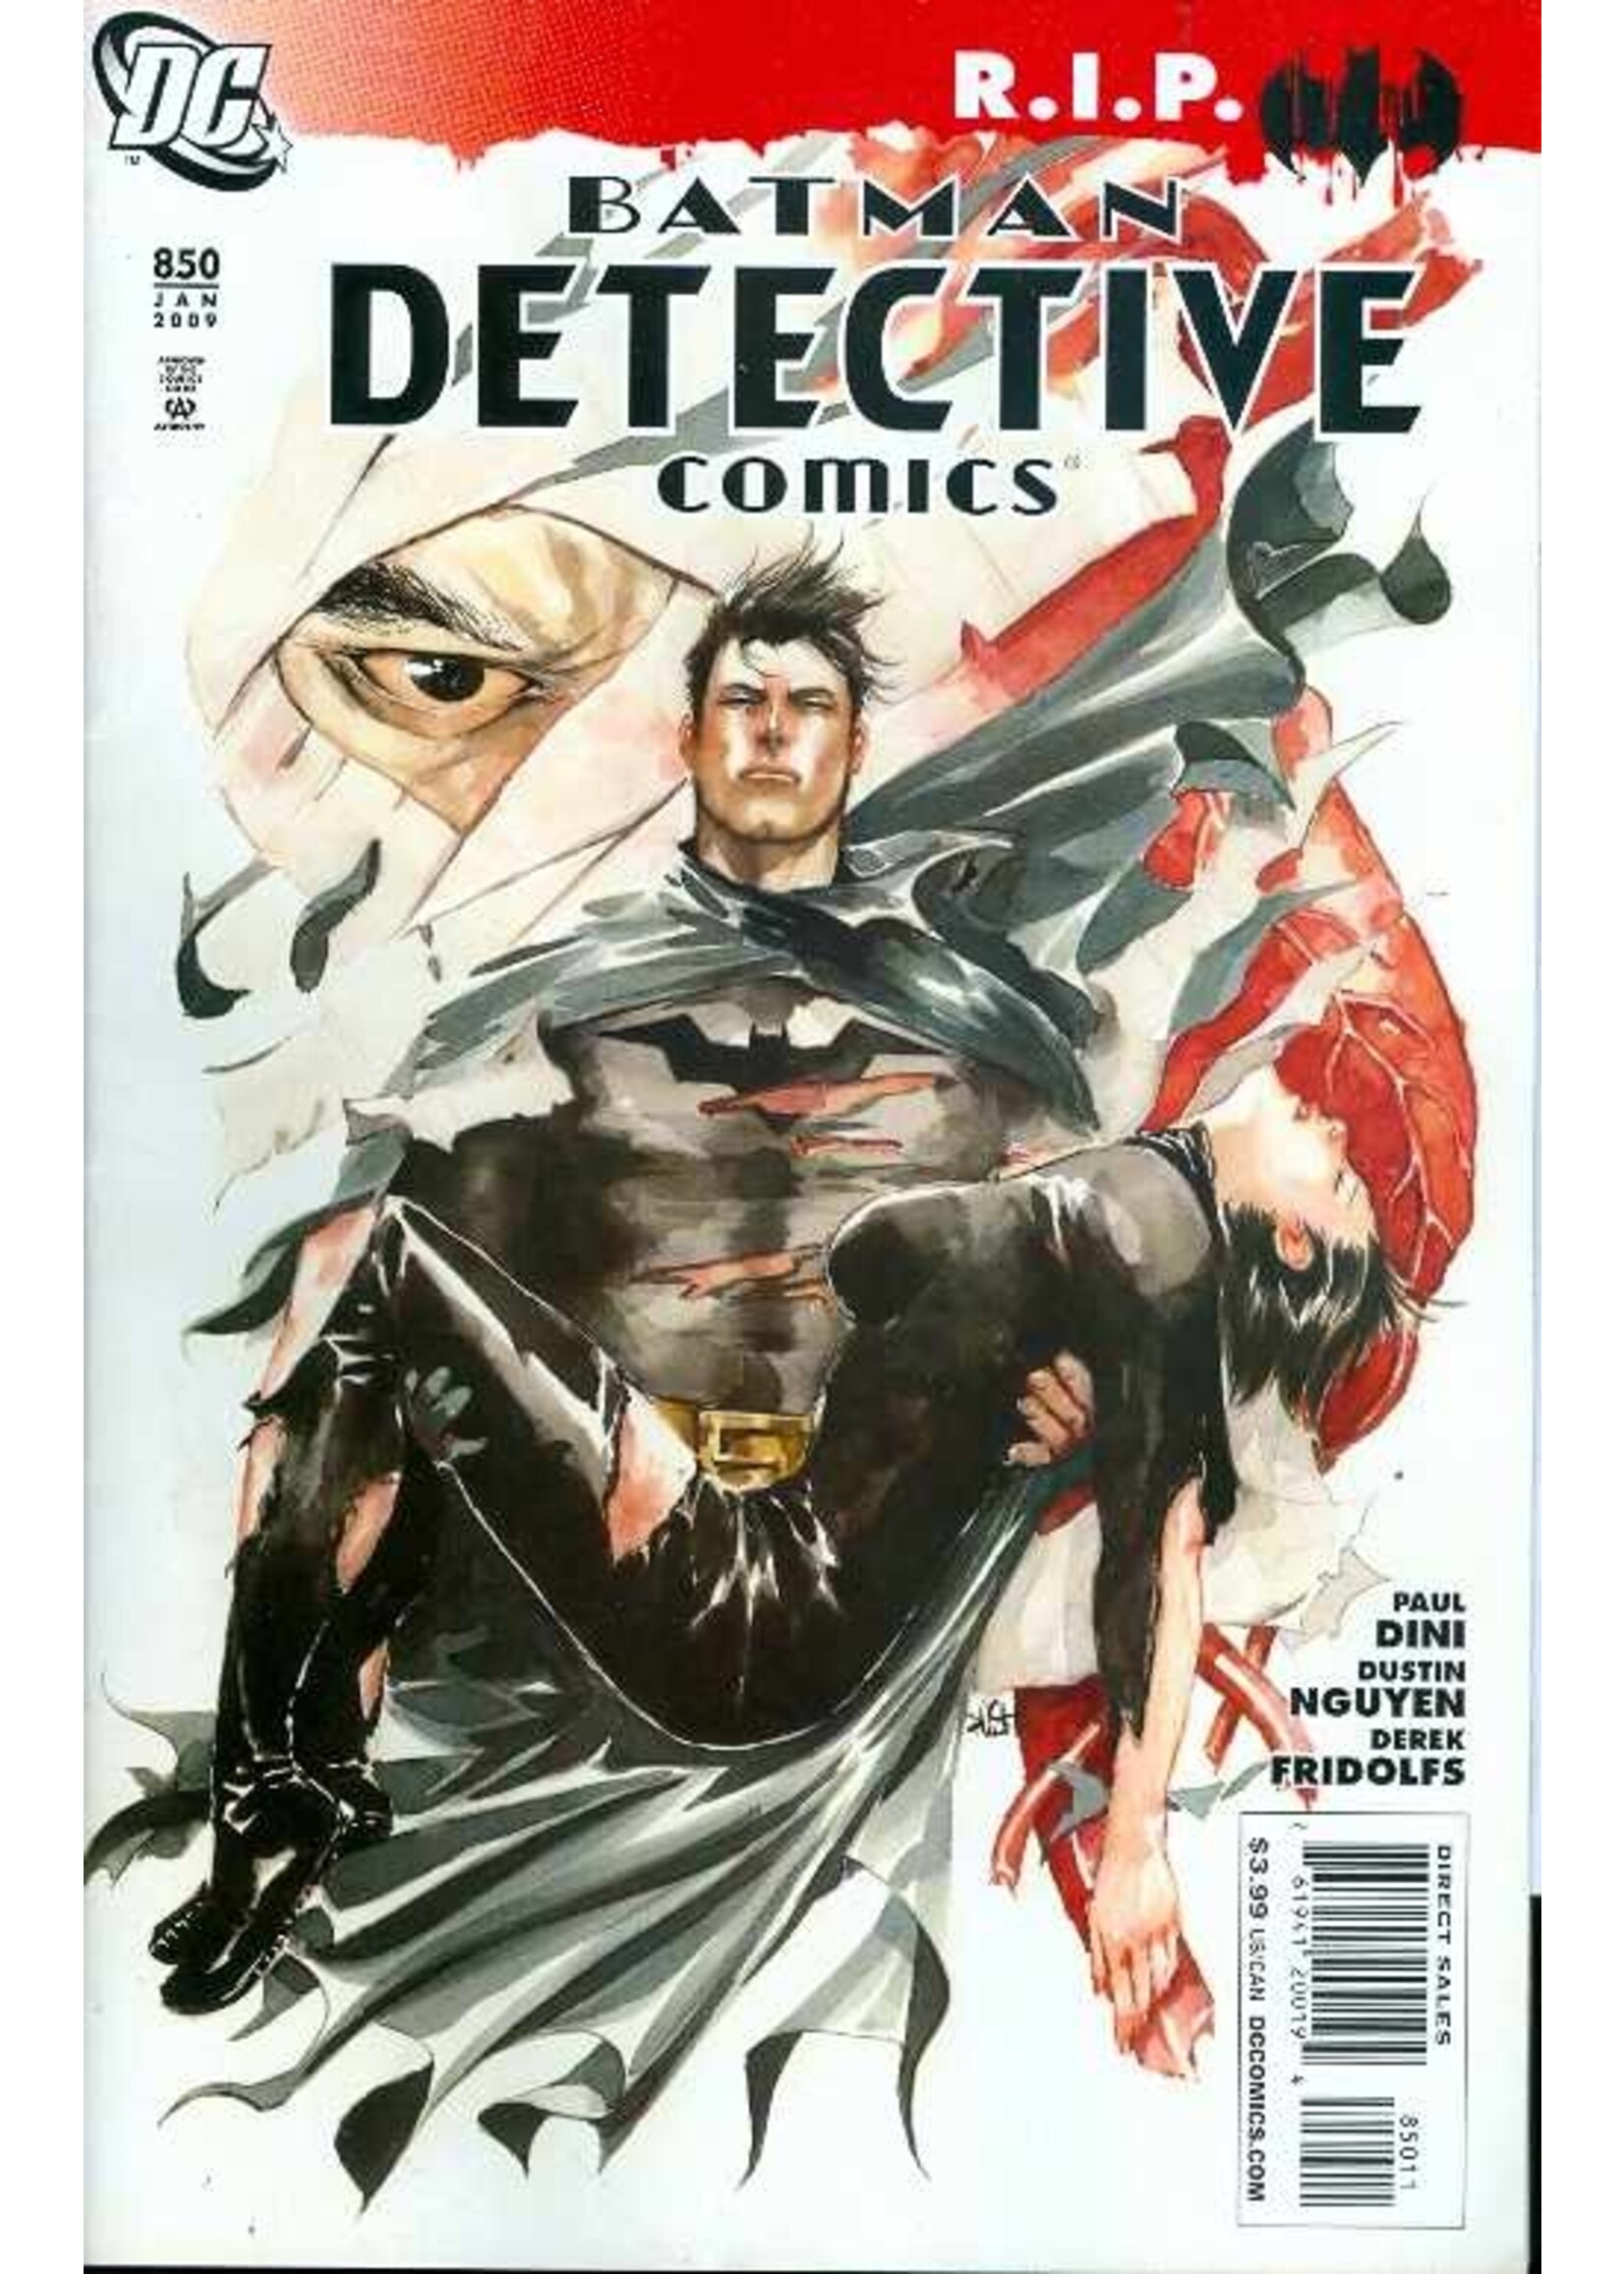 DC COMICS DETECTIVE COMICS BUNDLE #814-881